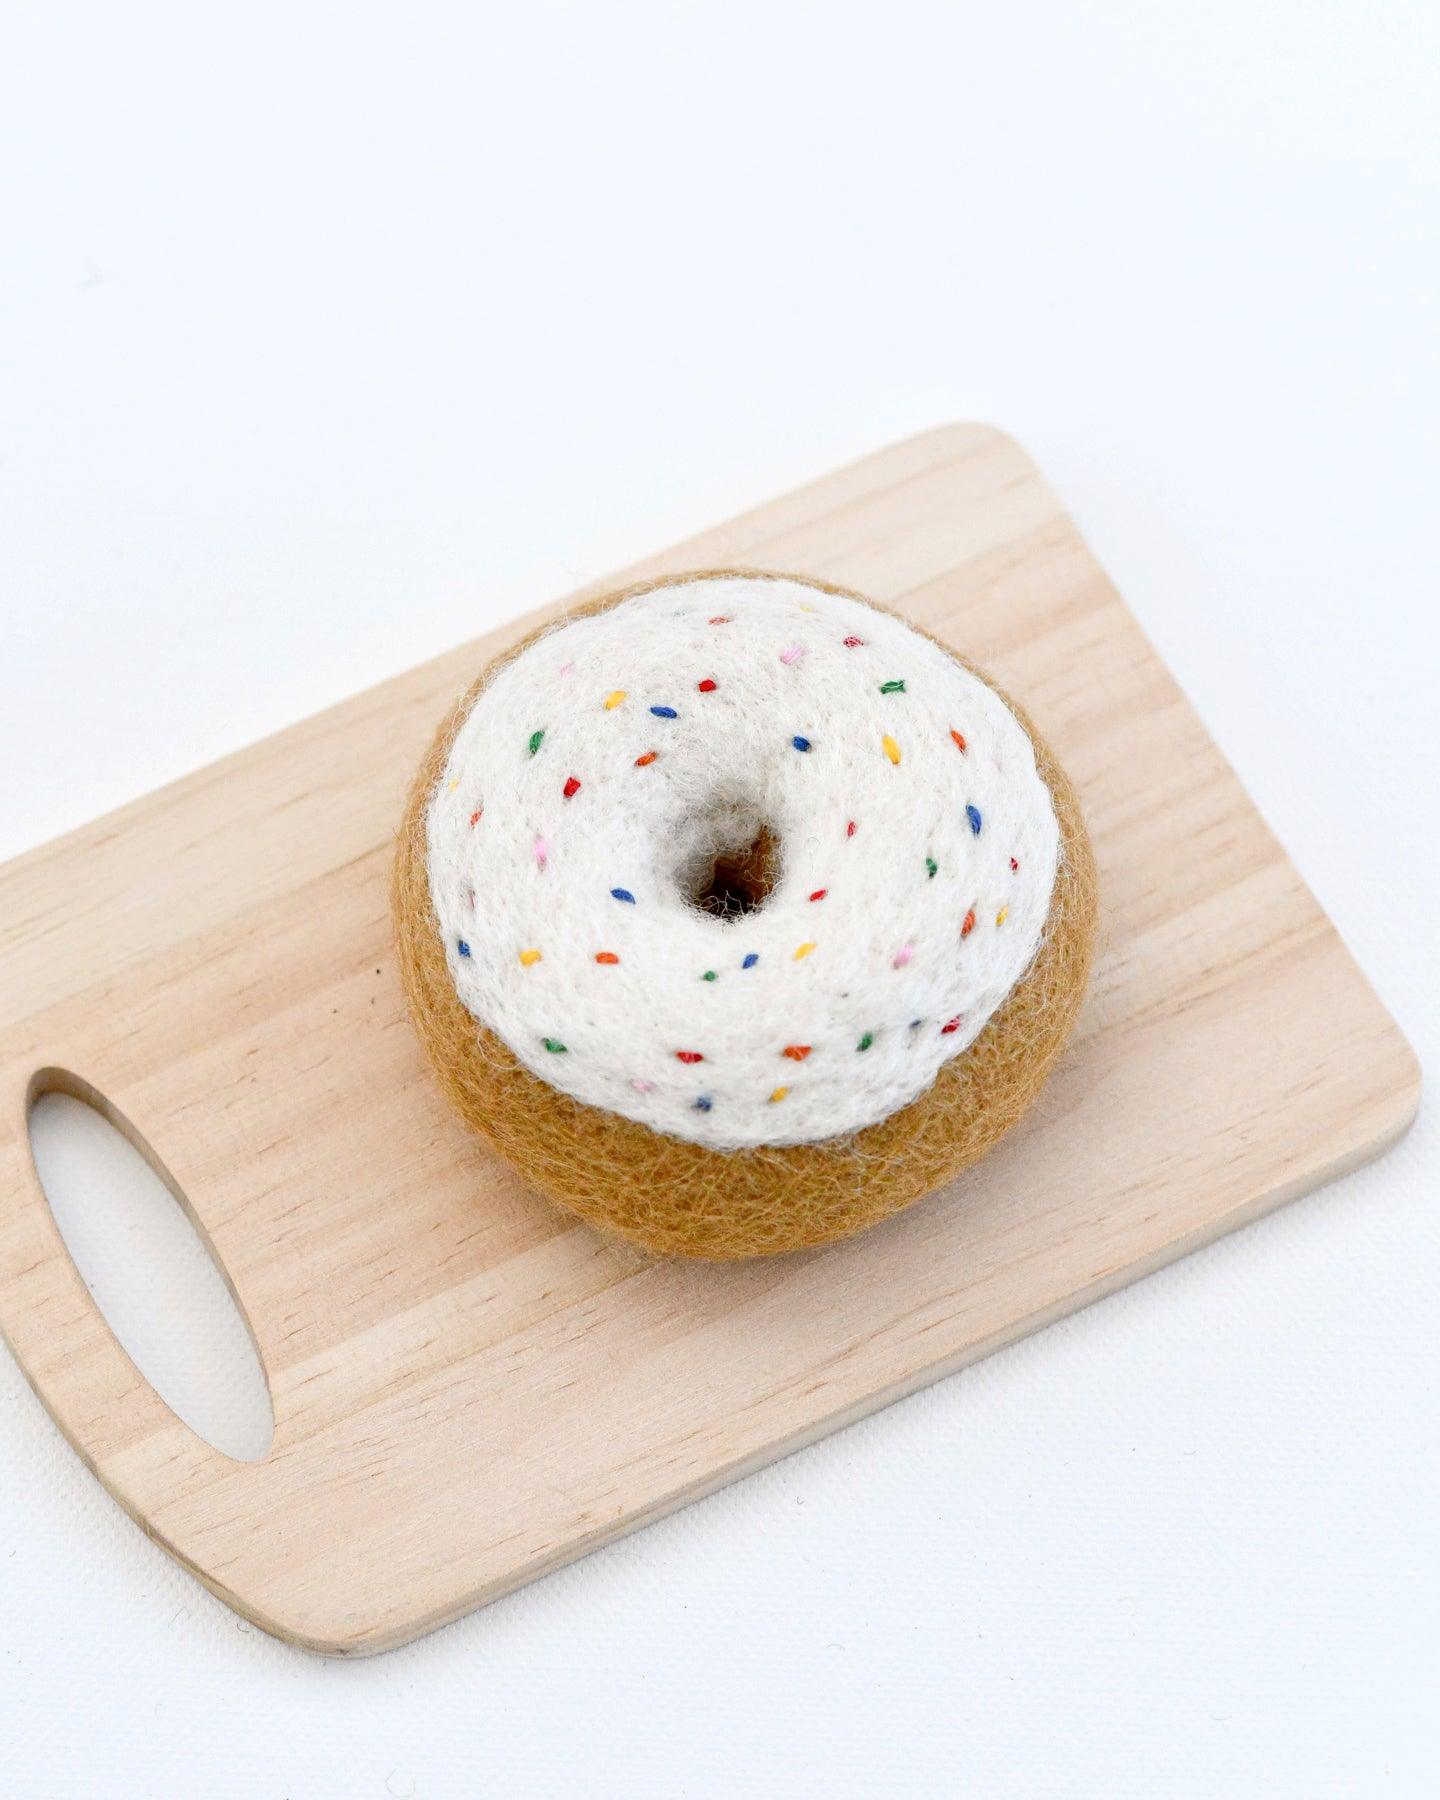 Felt Doughnut (Donut) with Classic Glaze and Rainbow Sprinkles - Tara Treasures